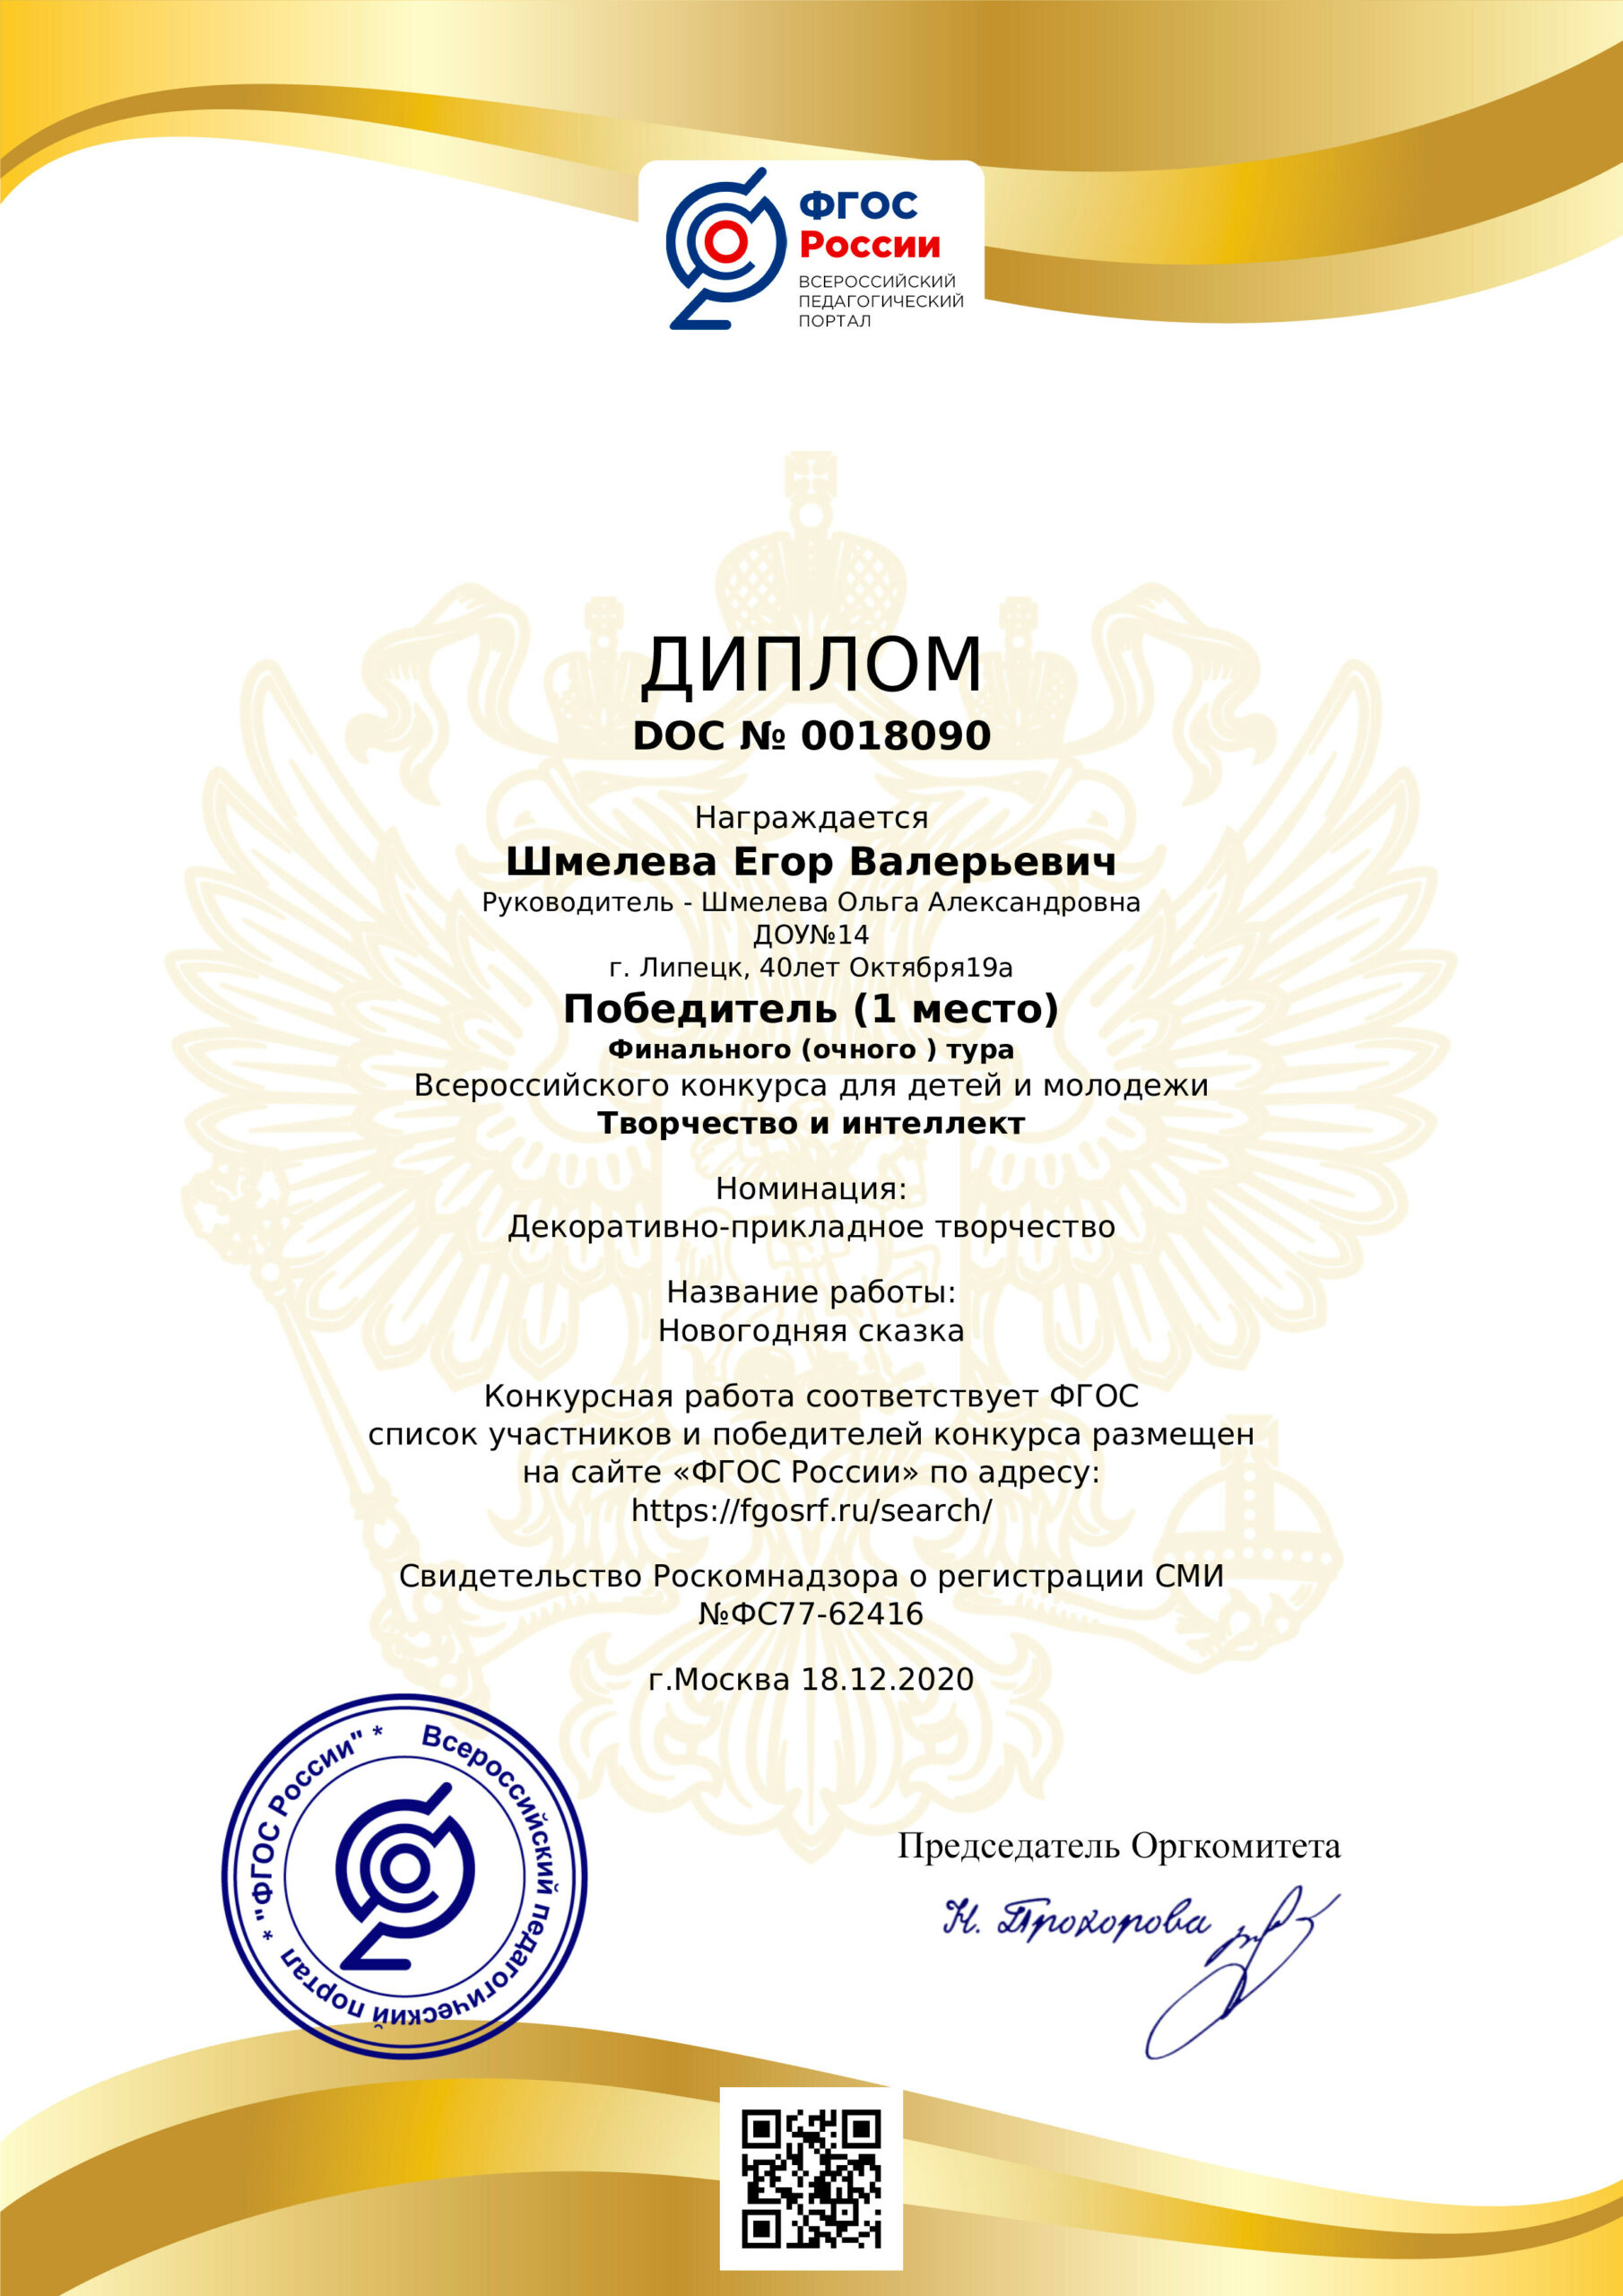 Всероссийский конкурс для детей и молодежи «Творчество и интеллект»